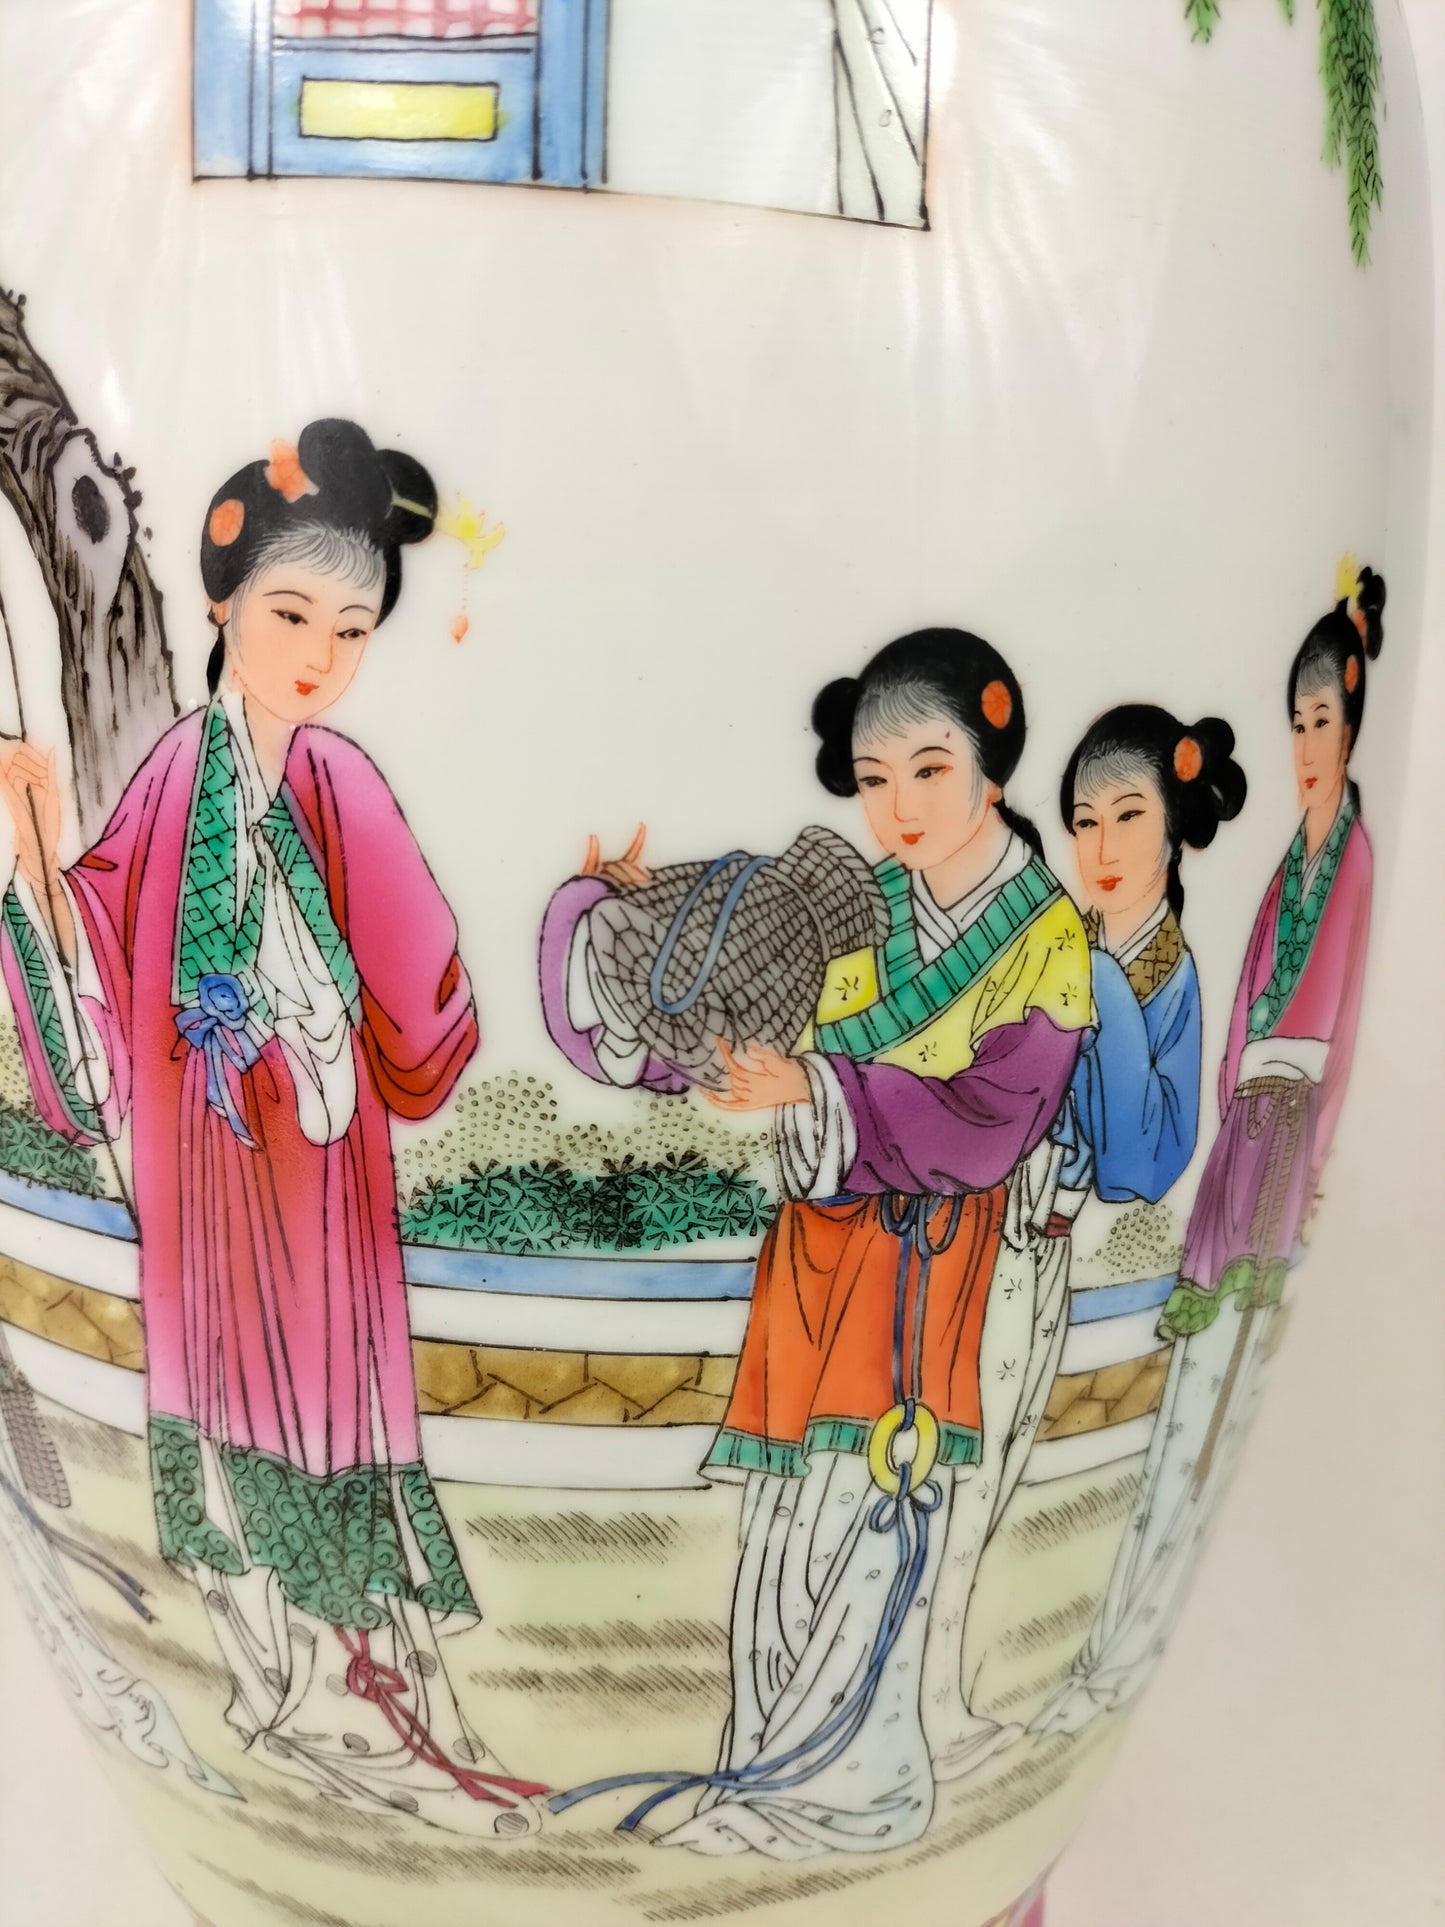 Vase chinois famille rose à décor d'une scène de jardin // Jingdezhen - Marque Qianlong - XXème siècle